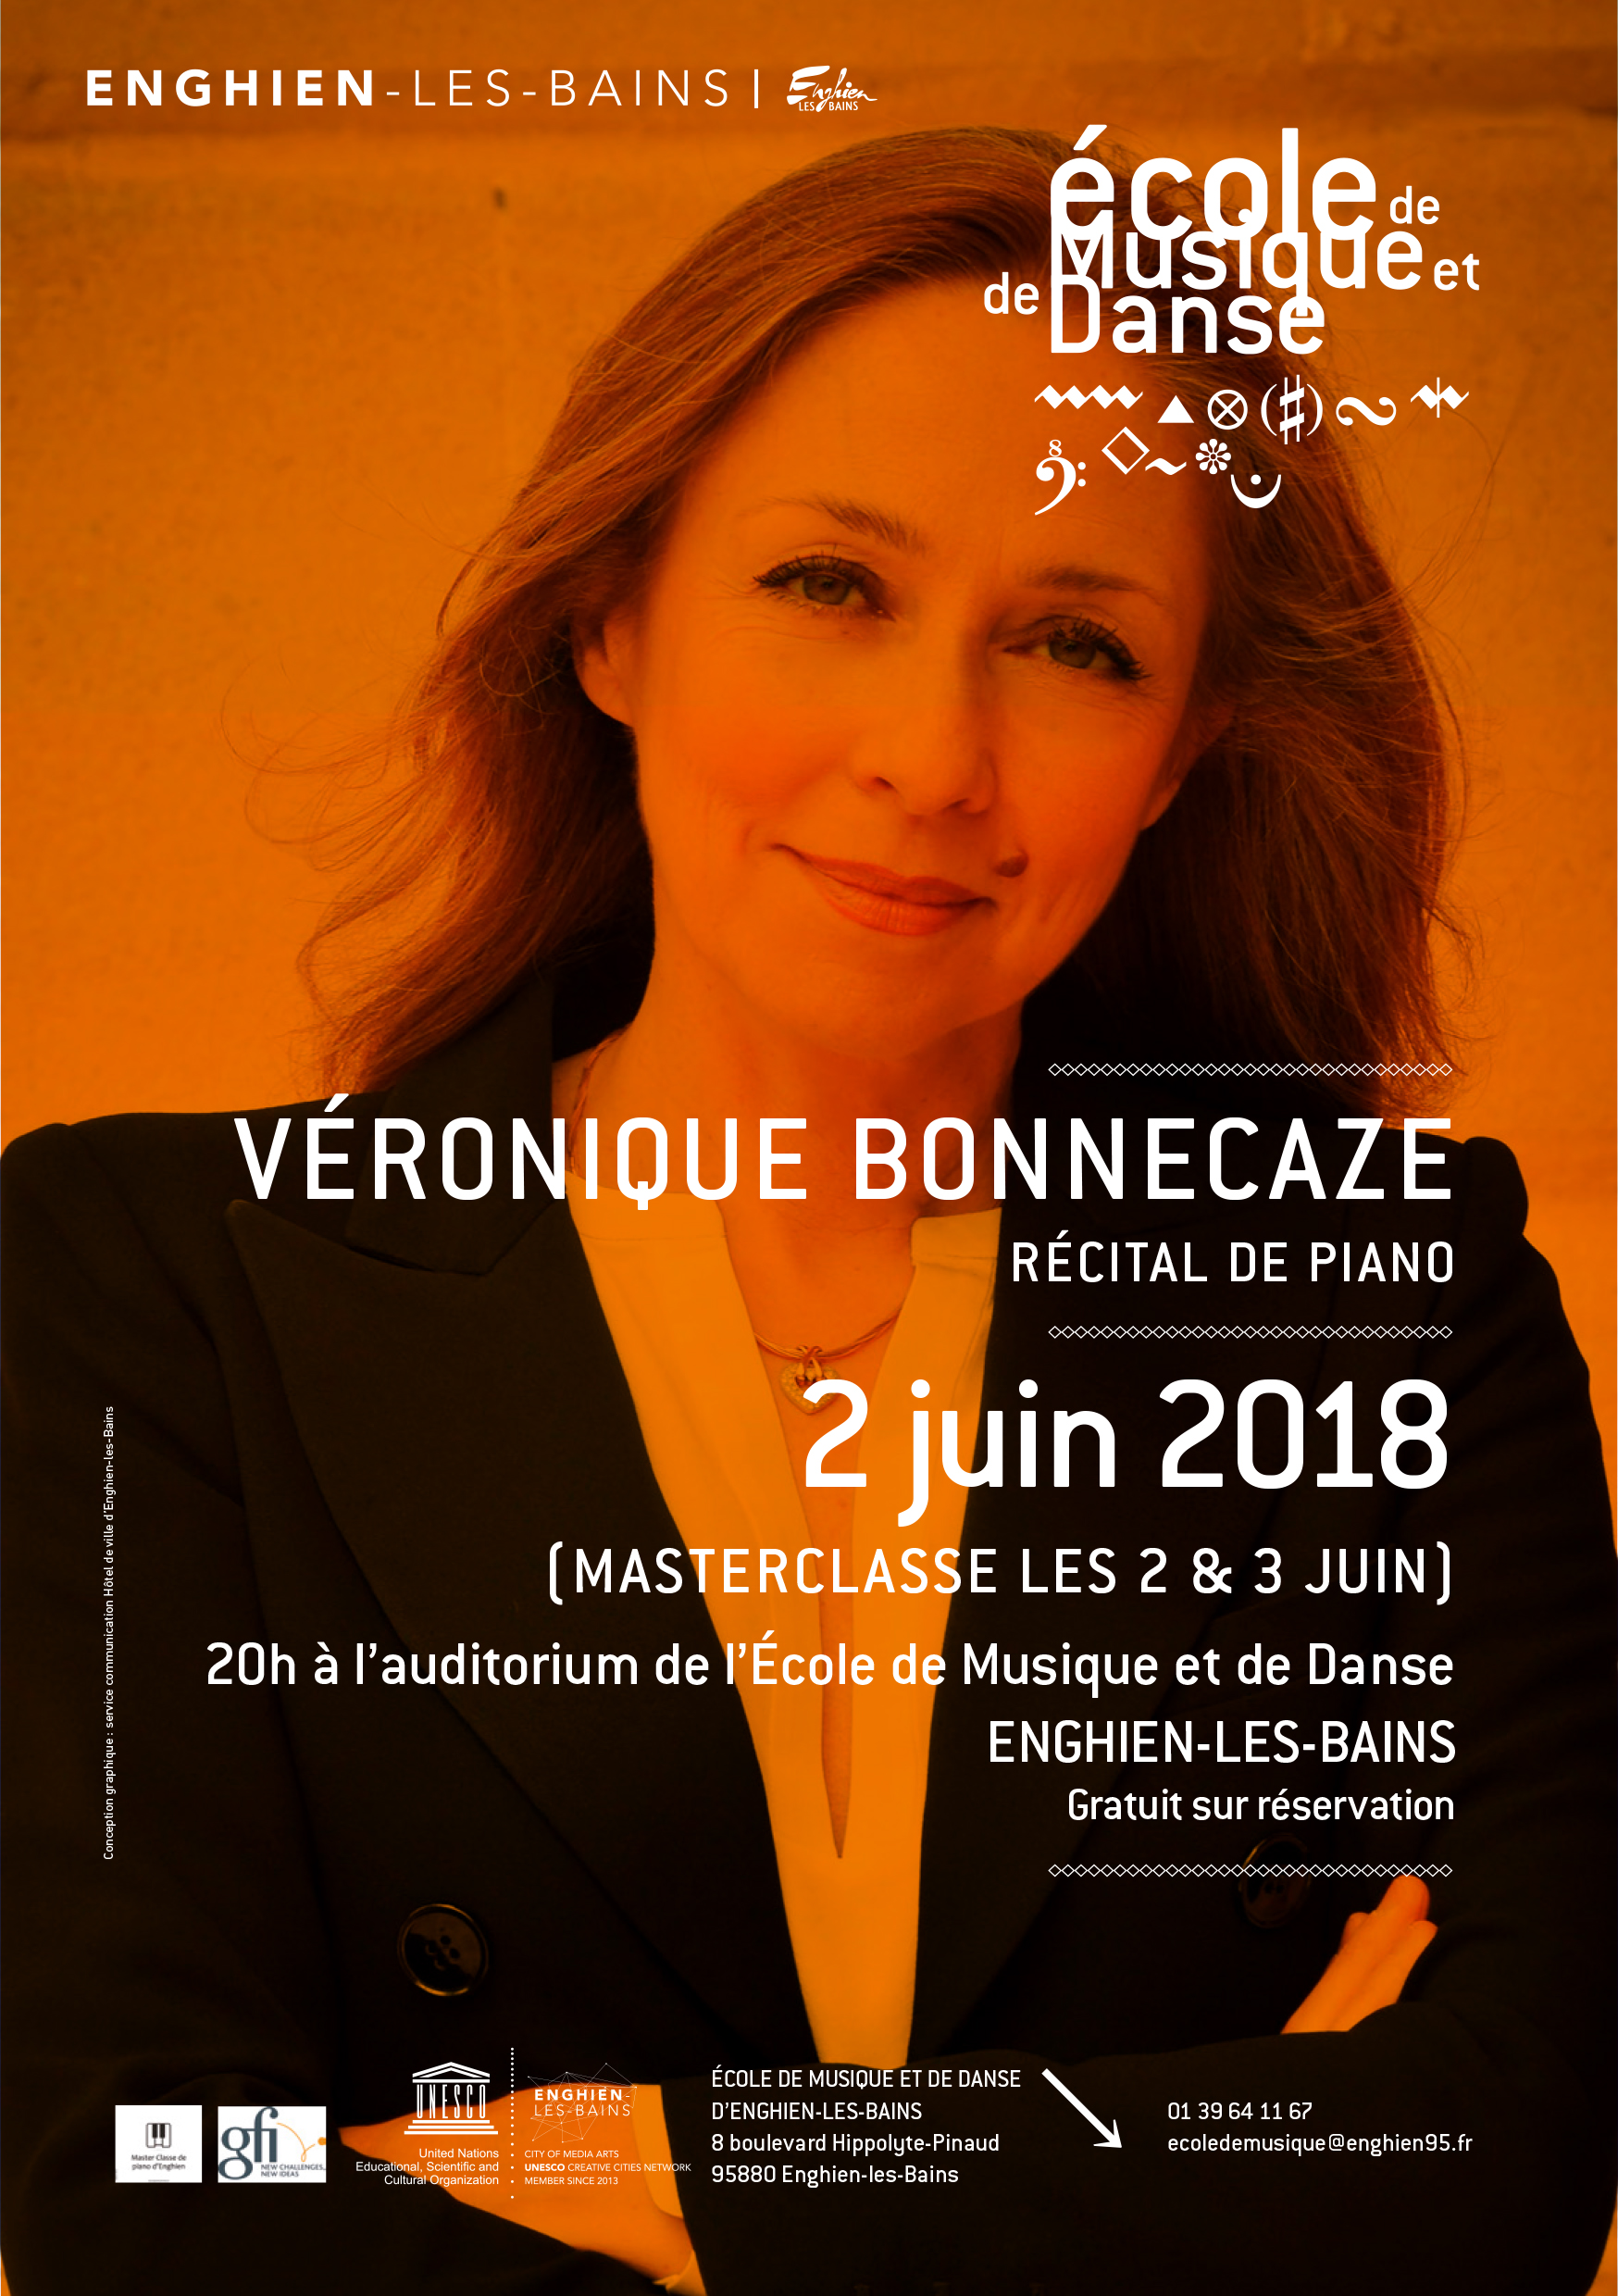 Read more about the article Interview de Véronique Bonnecaze